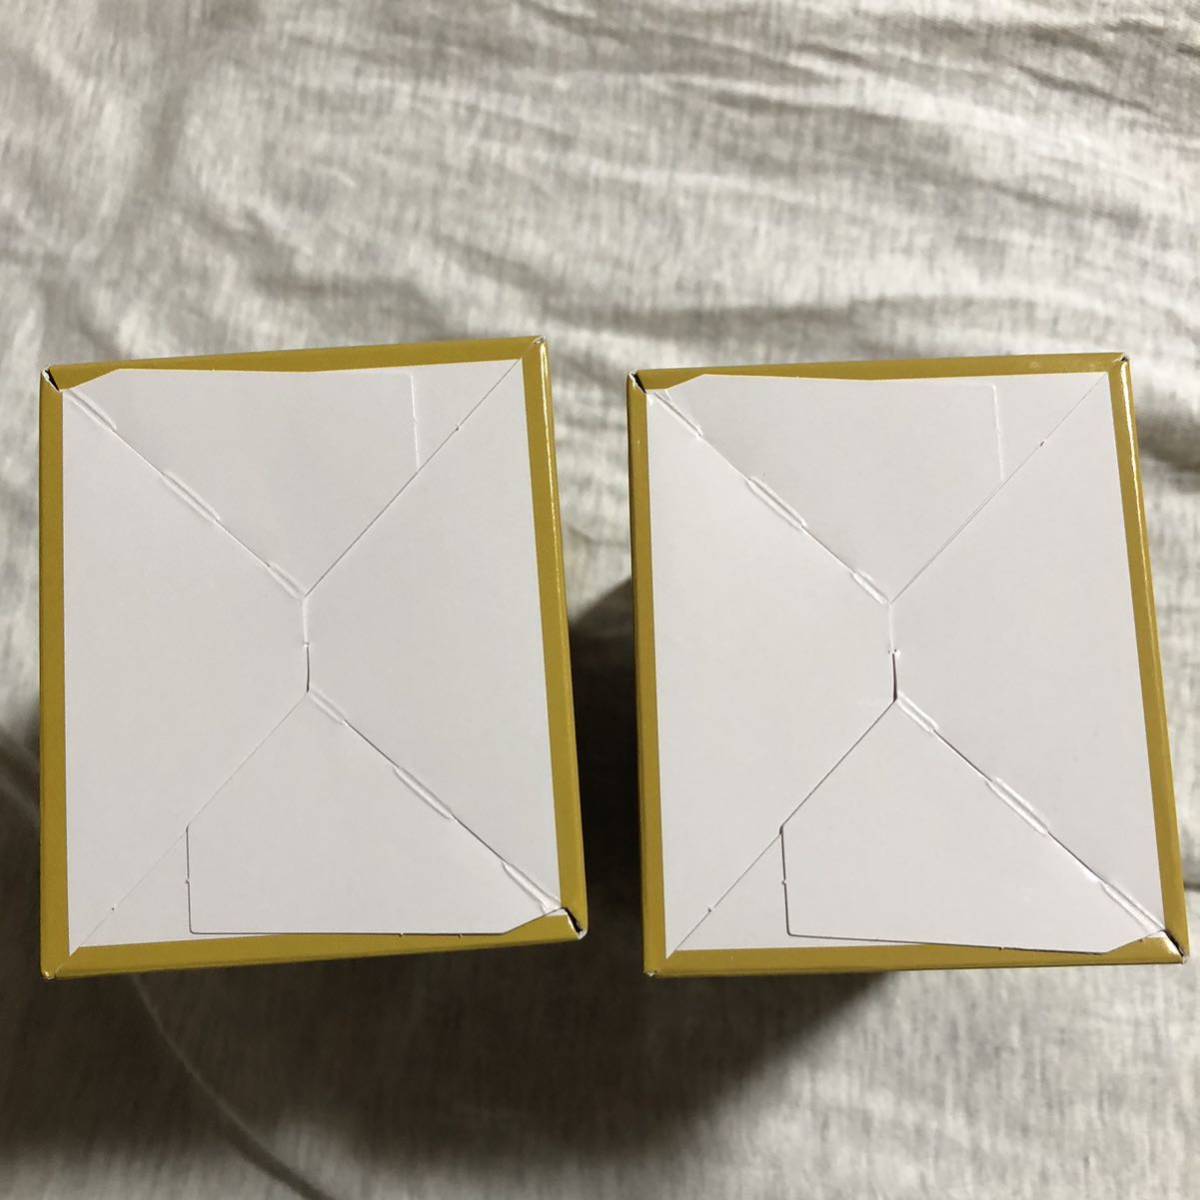 ワンピース カードゲーム 謀略の王国 2box 未開封 新品 テープ付き 